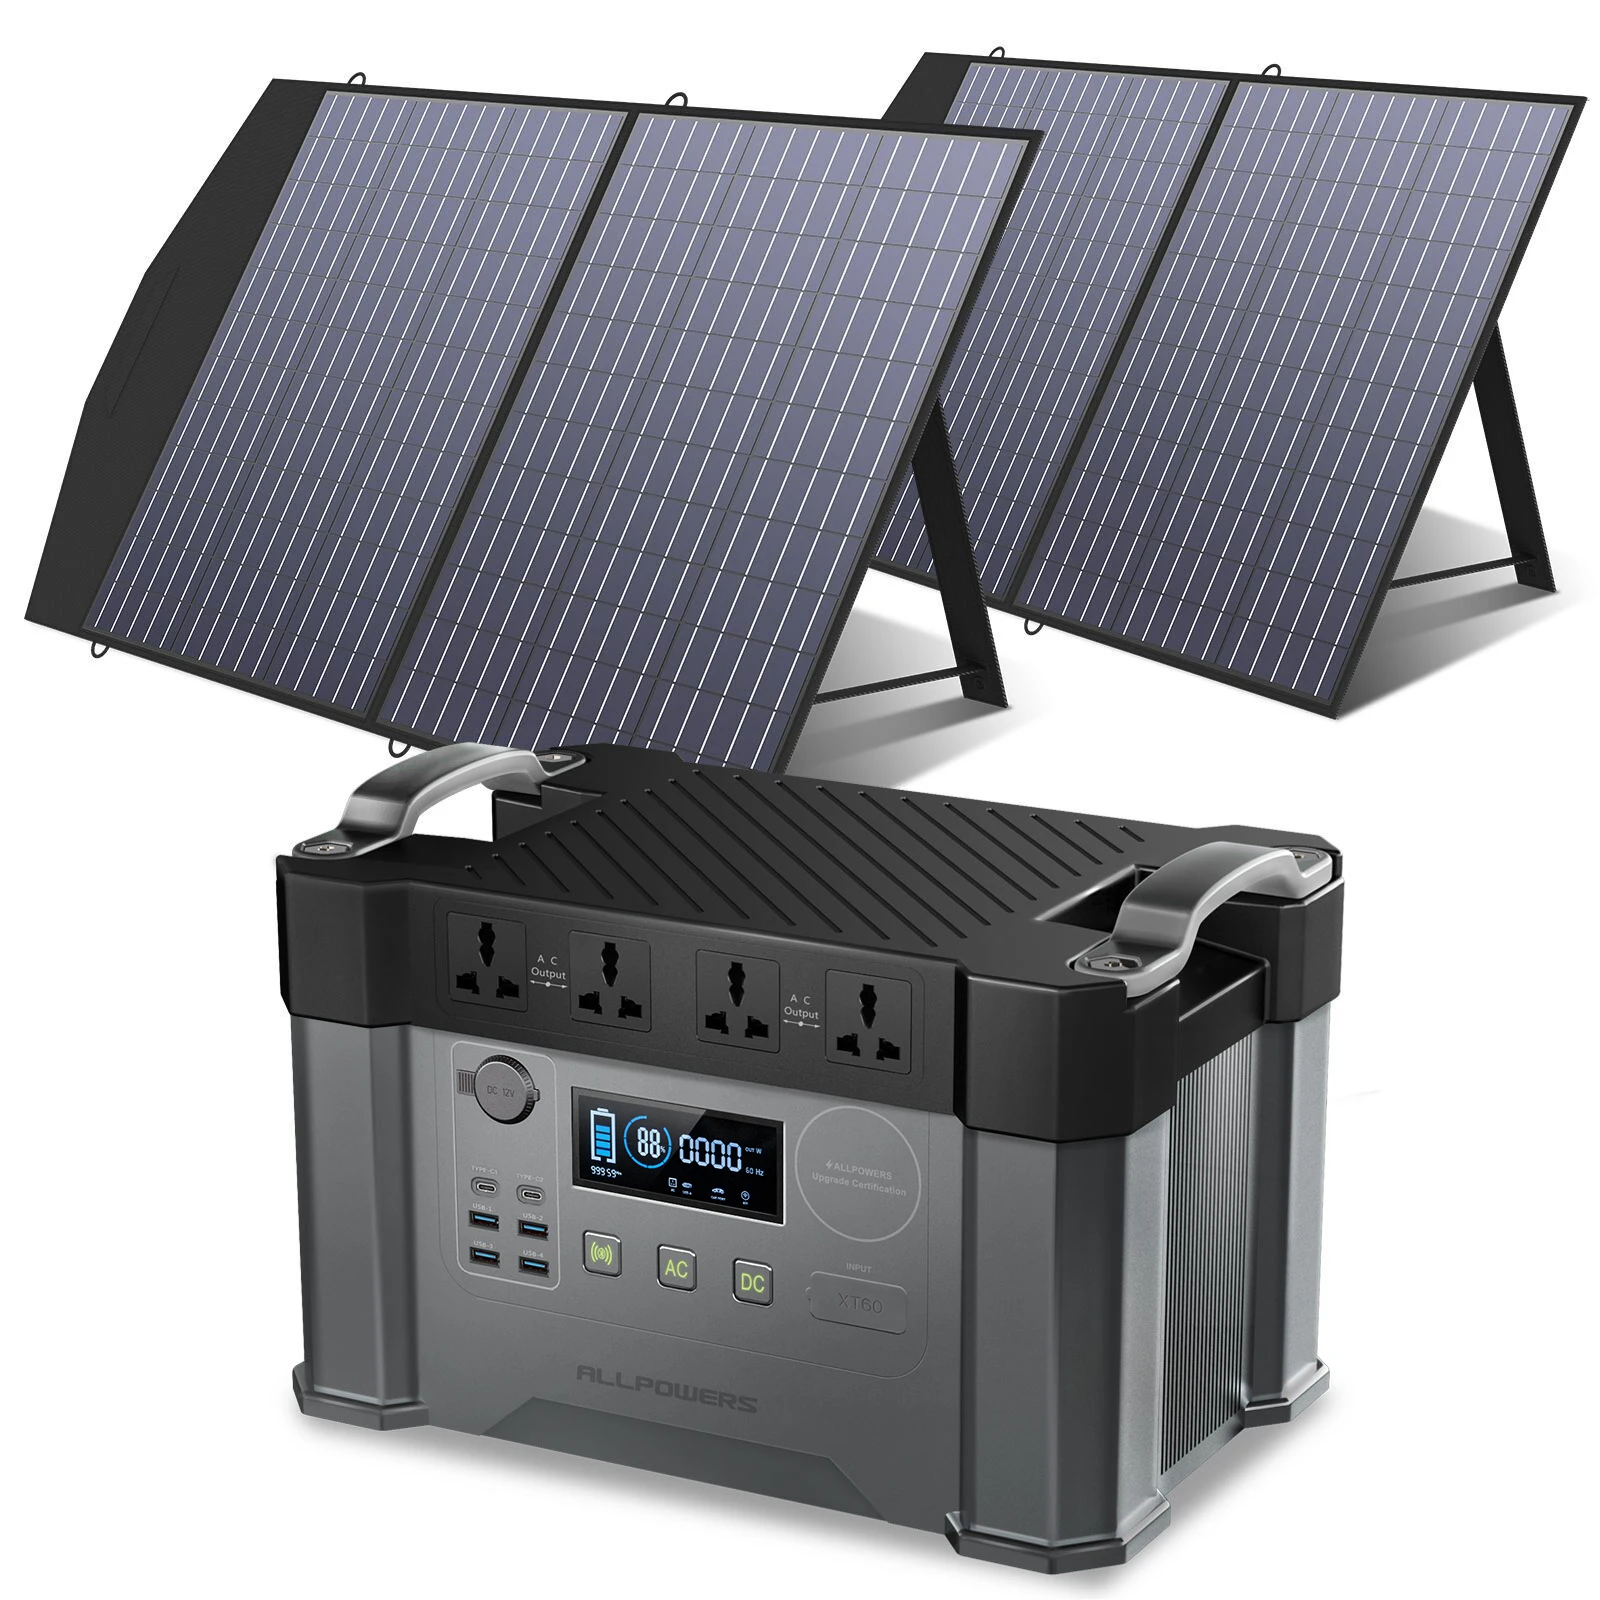 Allpowers solar panel 5v10w batería de portátiles solar cargador para phone/camping